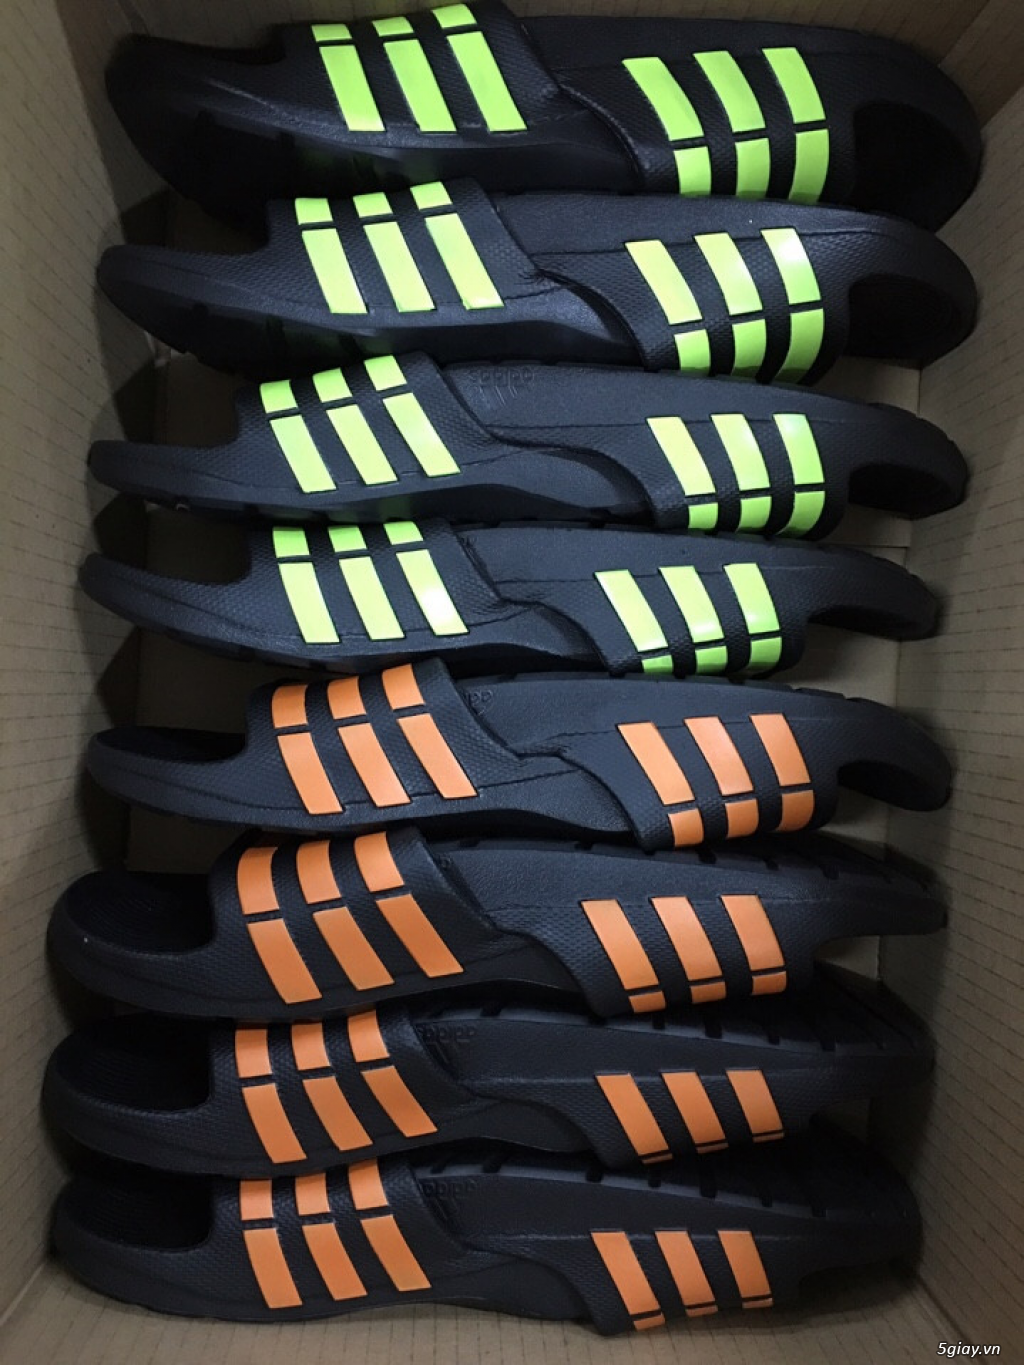 Dép Adidas Duramo Eva bền, cực nhẹ, nhiều màu - 1